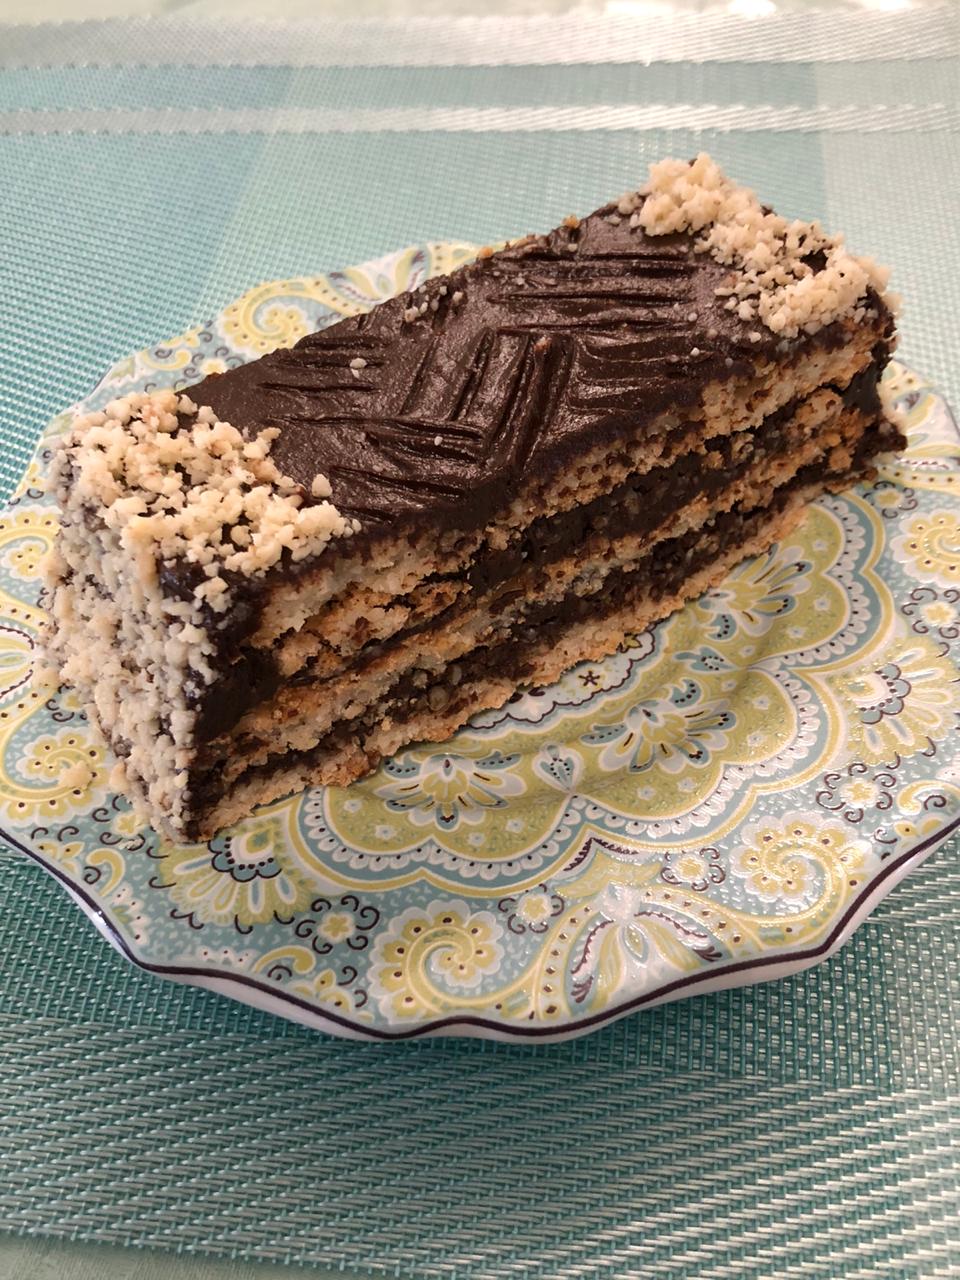 Шоколадный торт без муки, масла и раскатки коржей - пошаговый рецепт с фото